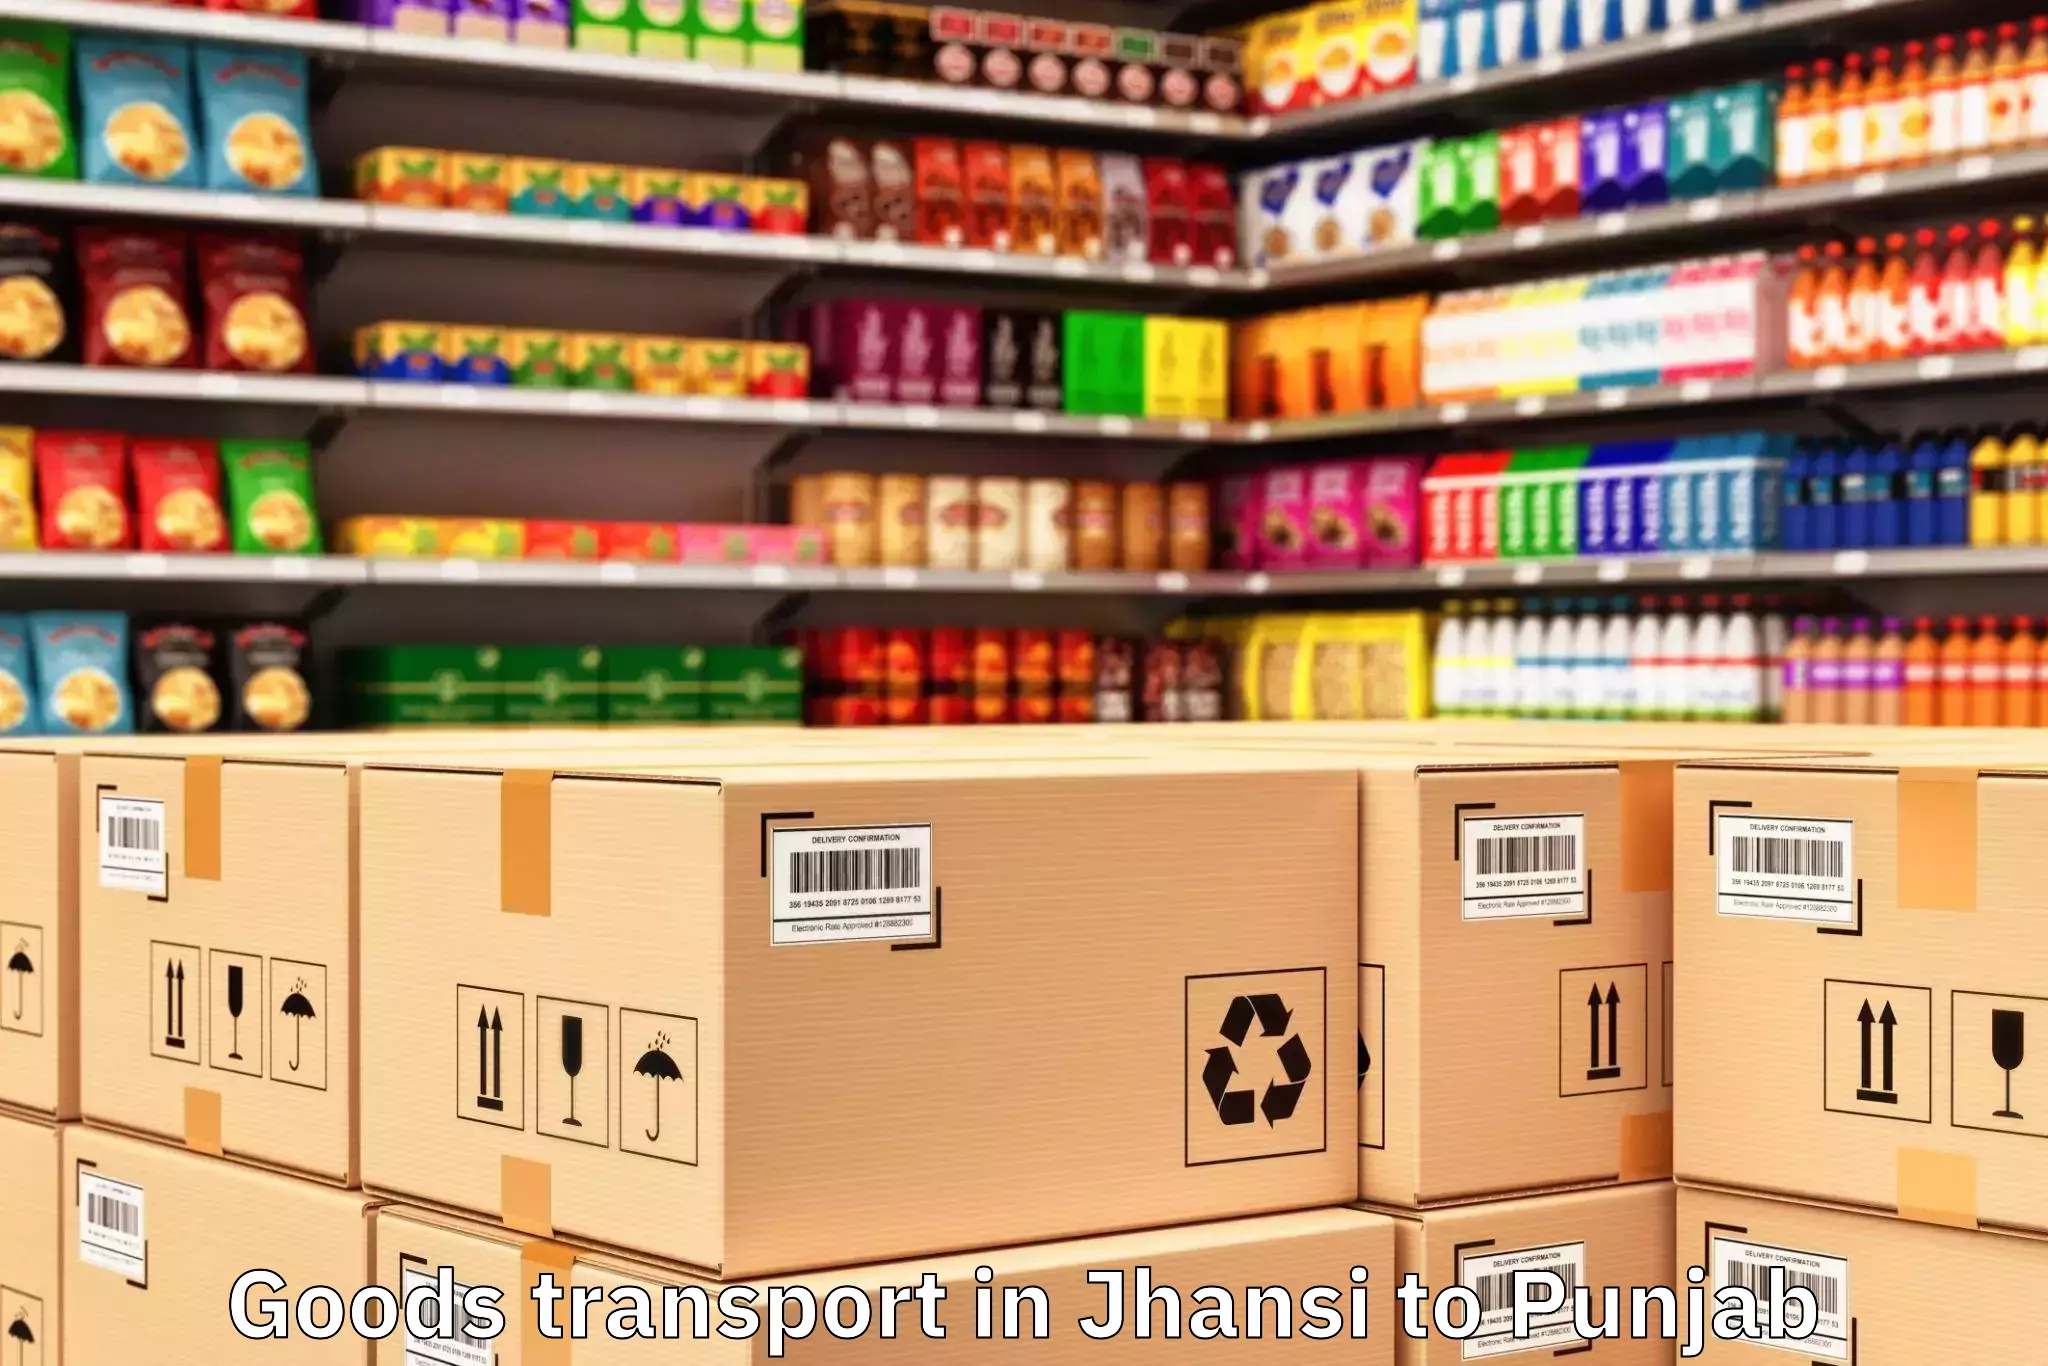 Jhansi to Chandigarh Airport Ixc Goods Transport